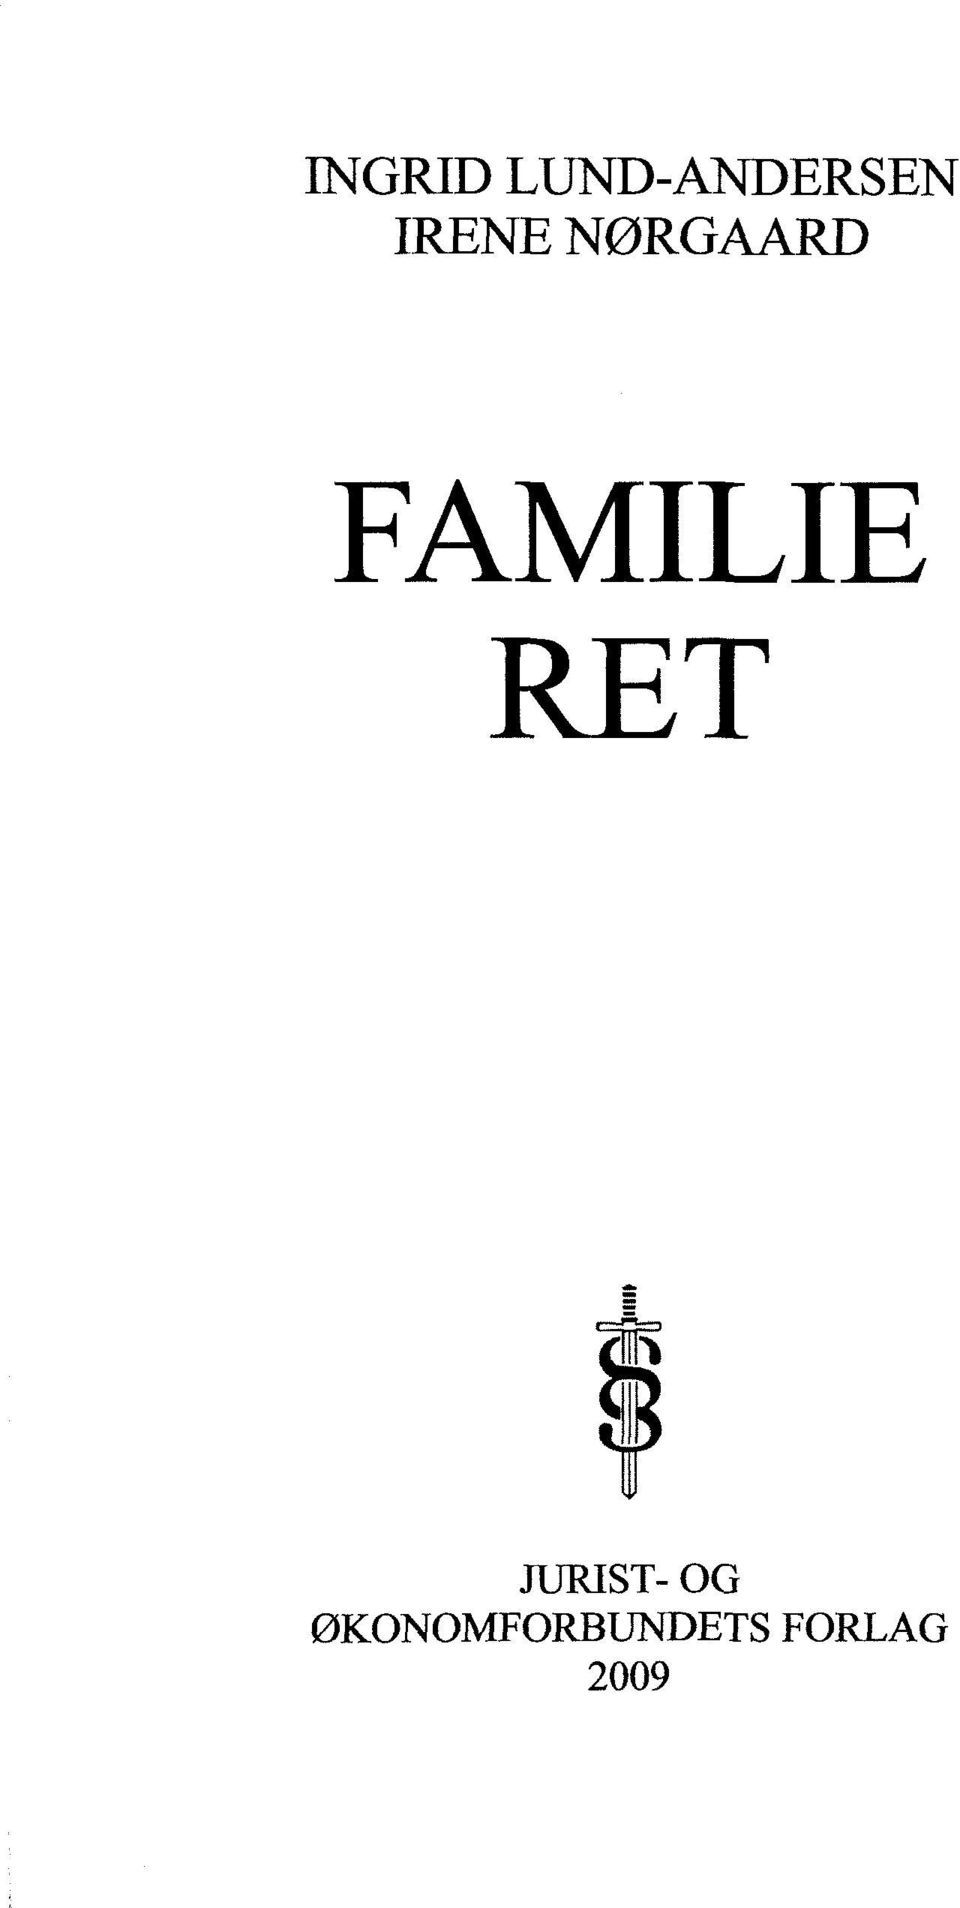 FAMILIE RET JURIST-